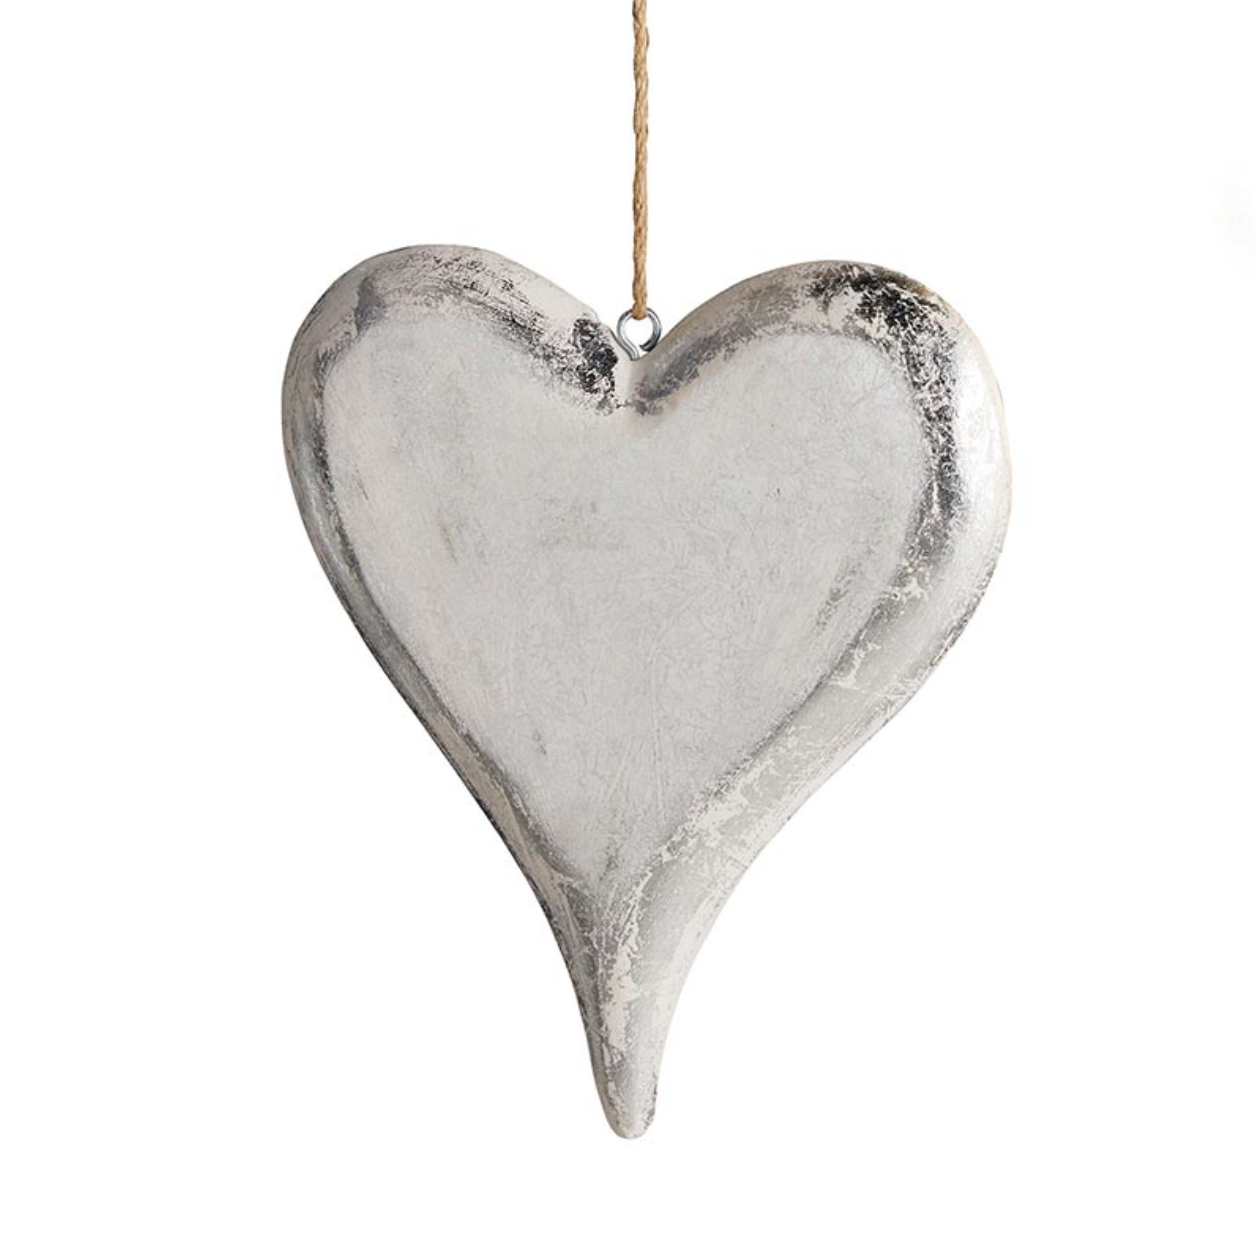 Antique Heart Ornaments